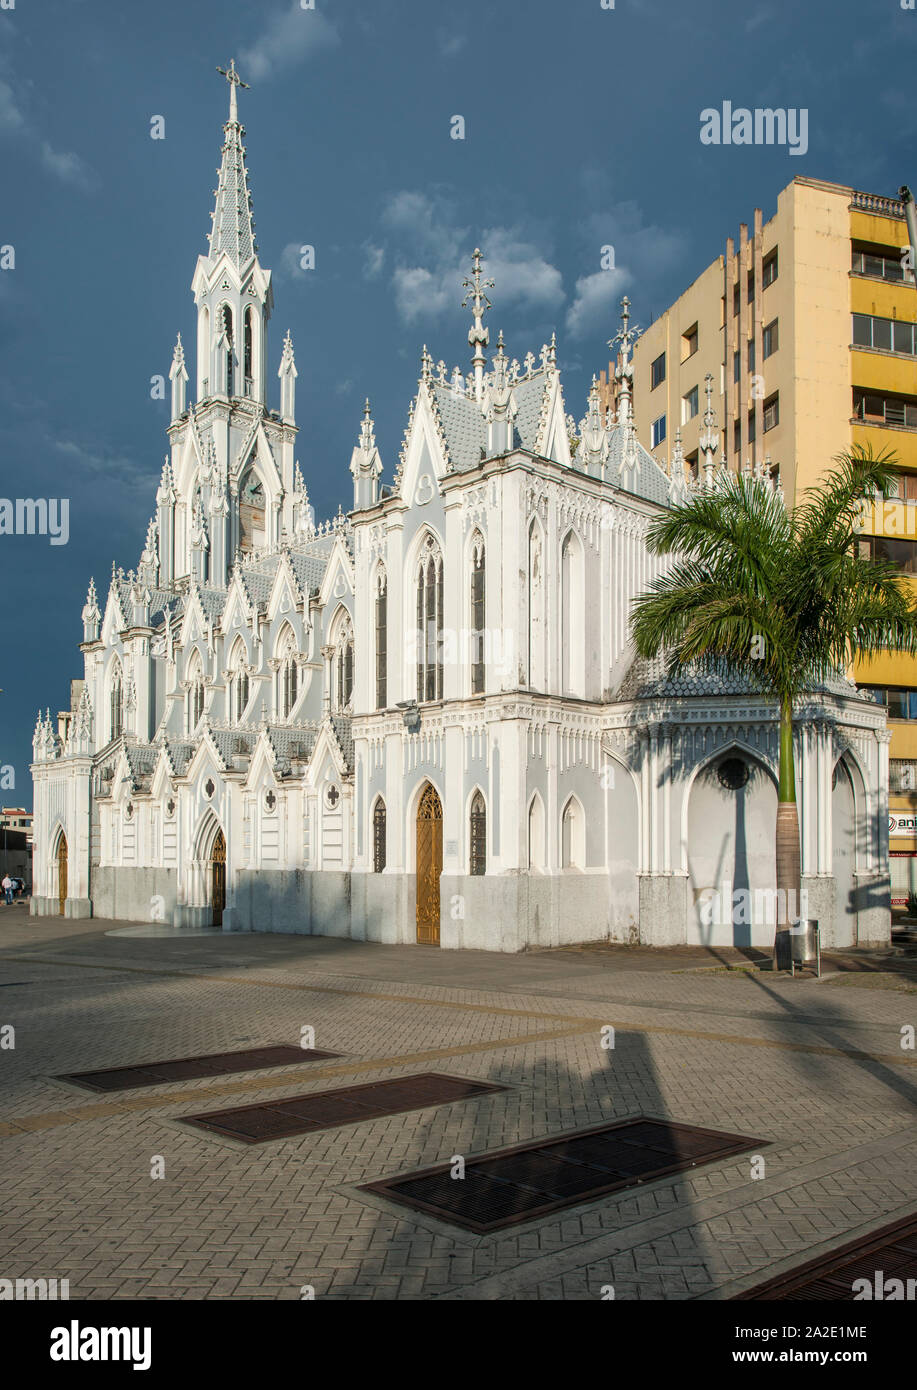 L'Ermita (église La Ermita) à Cali, Colombie. C'est une église catholique de style néo-gothique. Banque D'Images